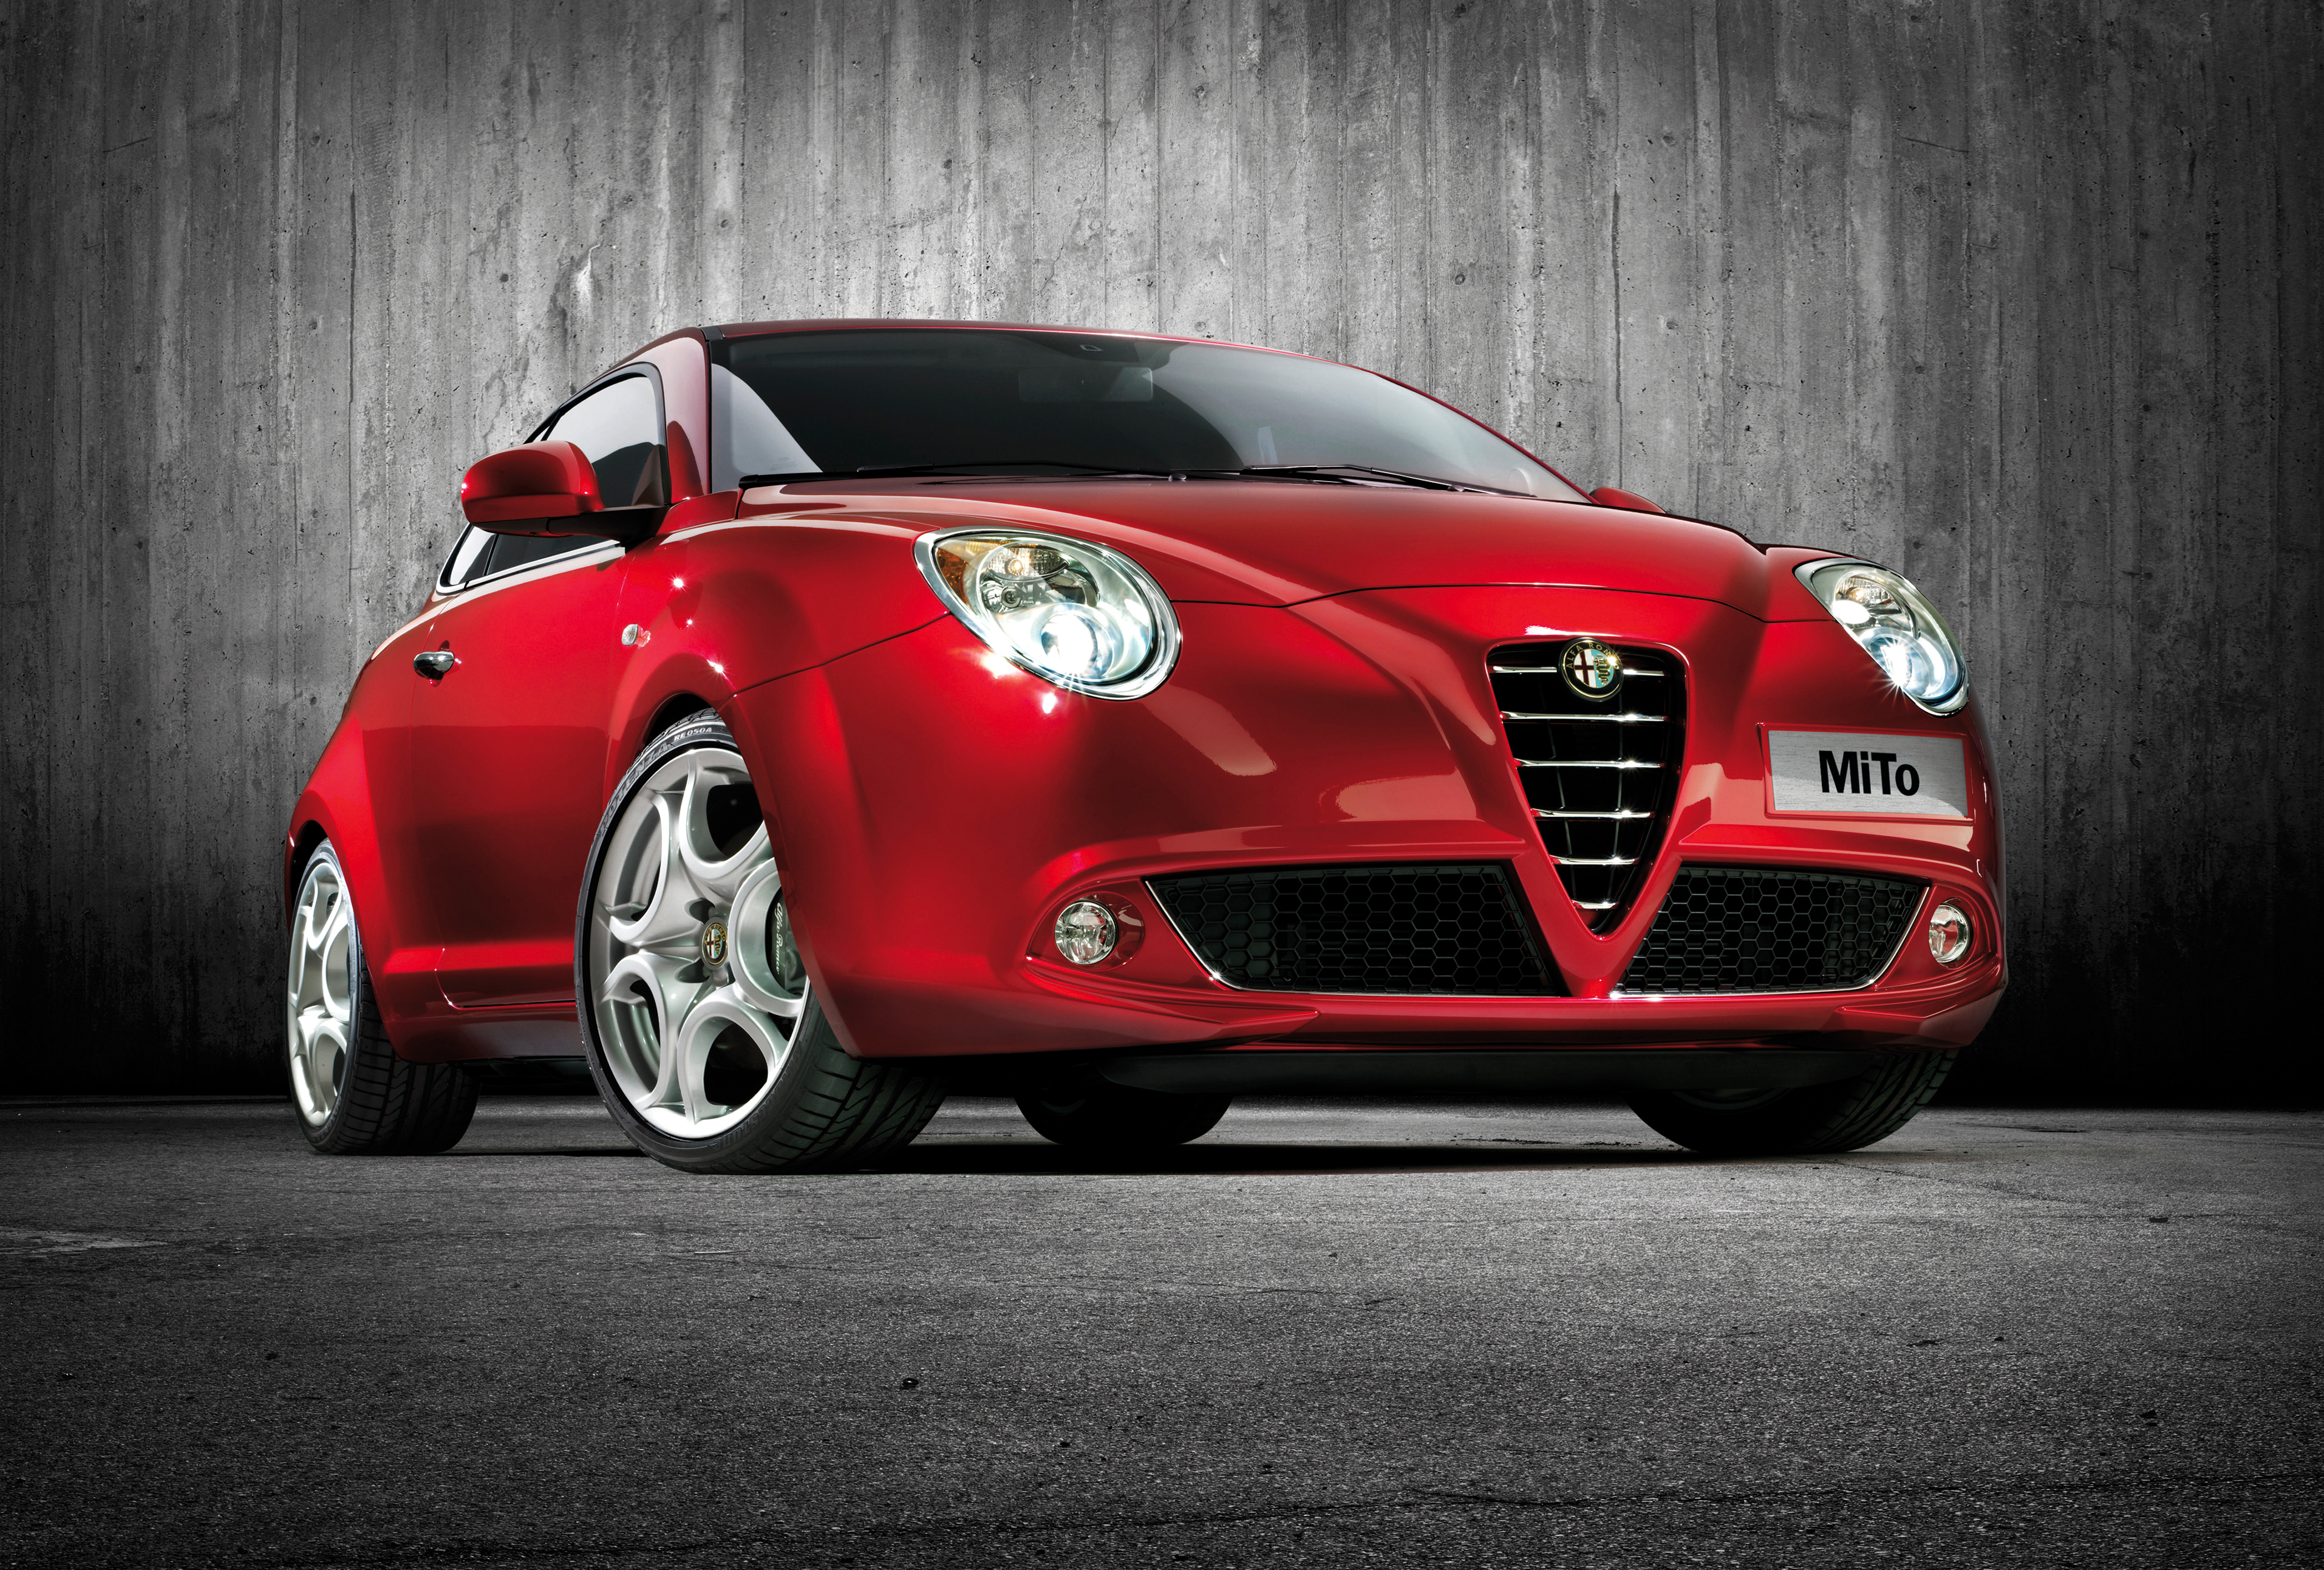 medeklinker erger maken Verandert in Alfa Romeo MiTo - Info, prijs, alternatieven AutoScout24